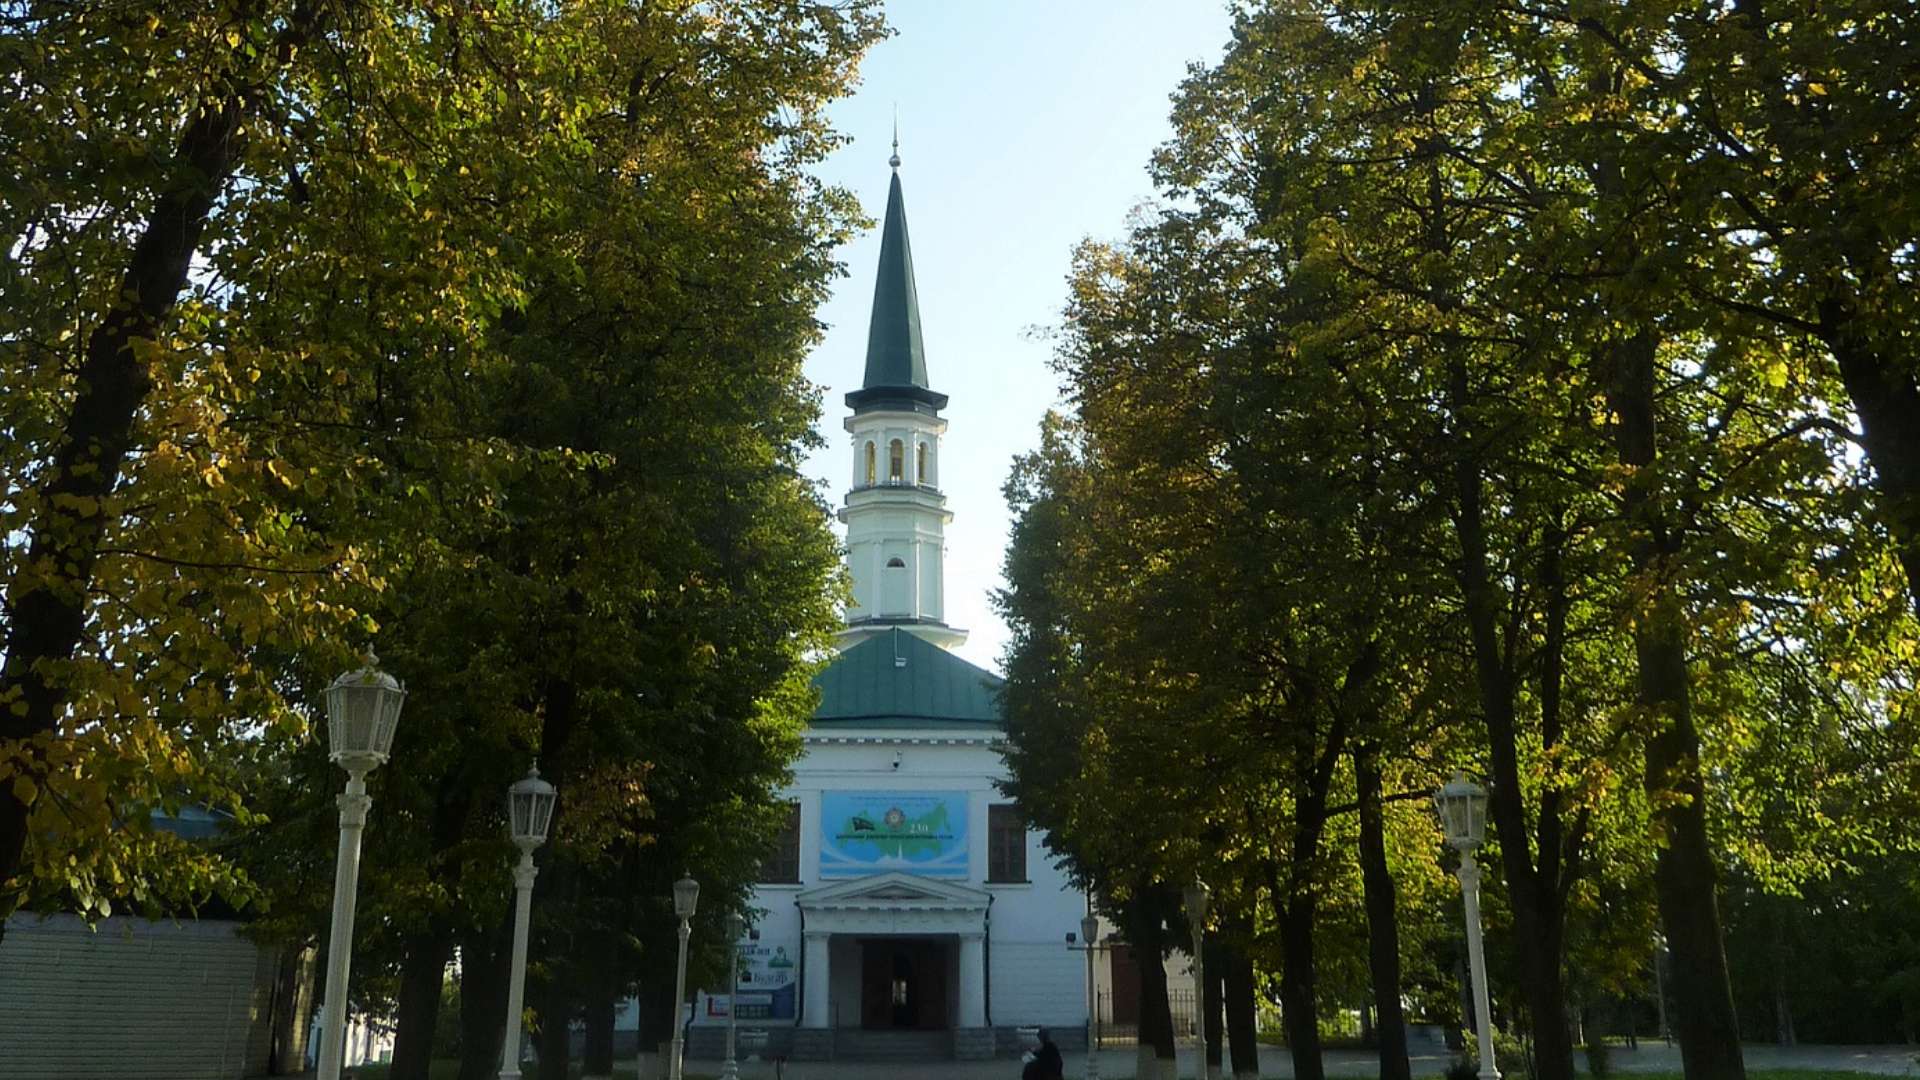 ツカィエフ・モスク